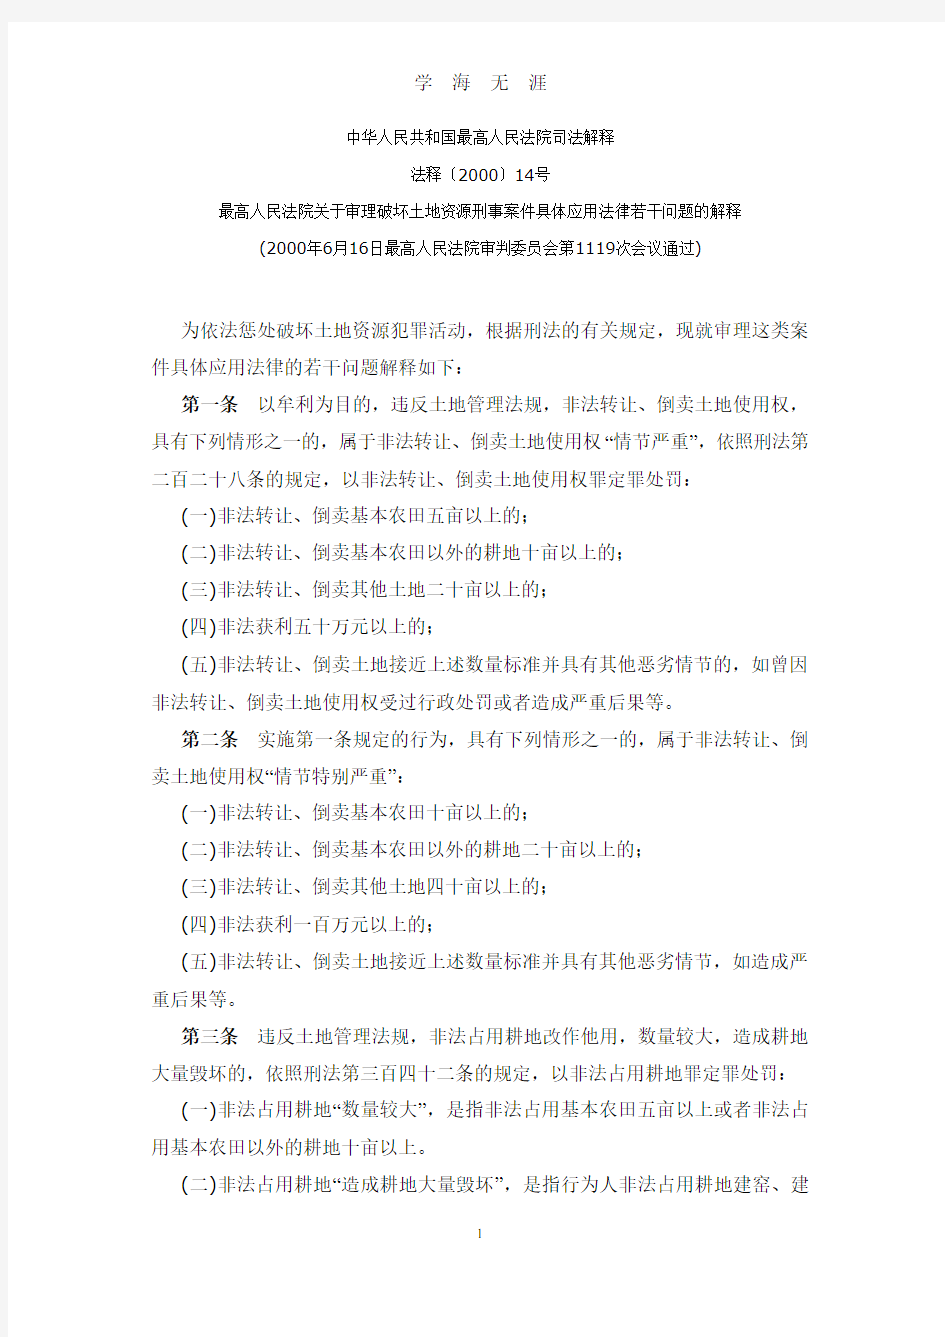 中华人民共和国最高人民法院司法解释(2020年7月整理).pdf